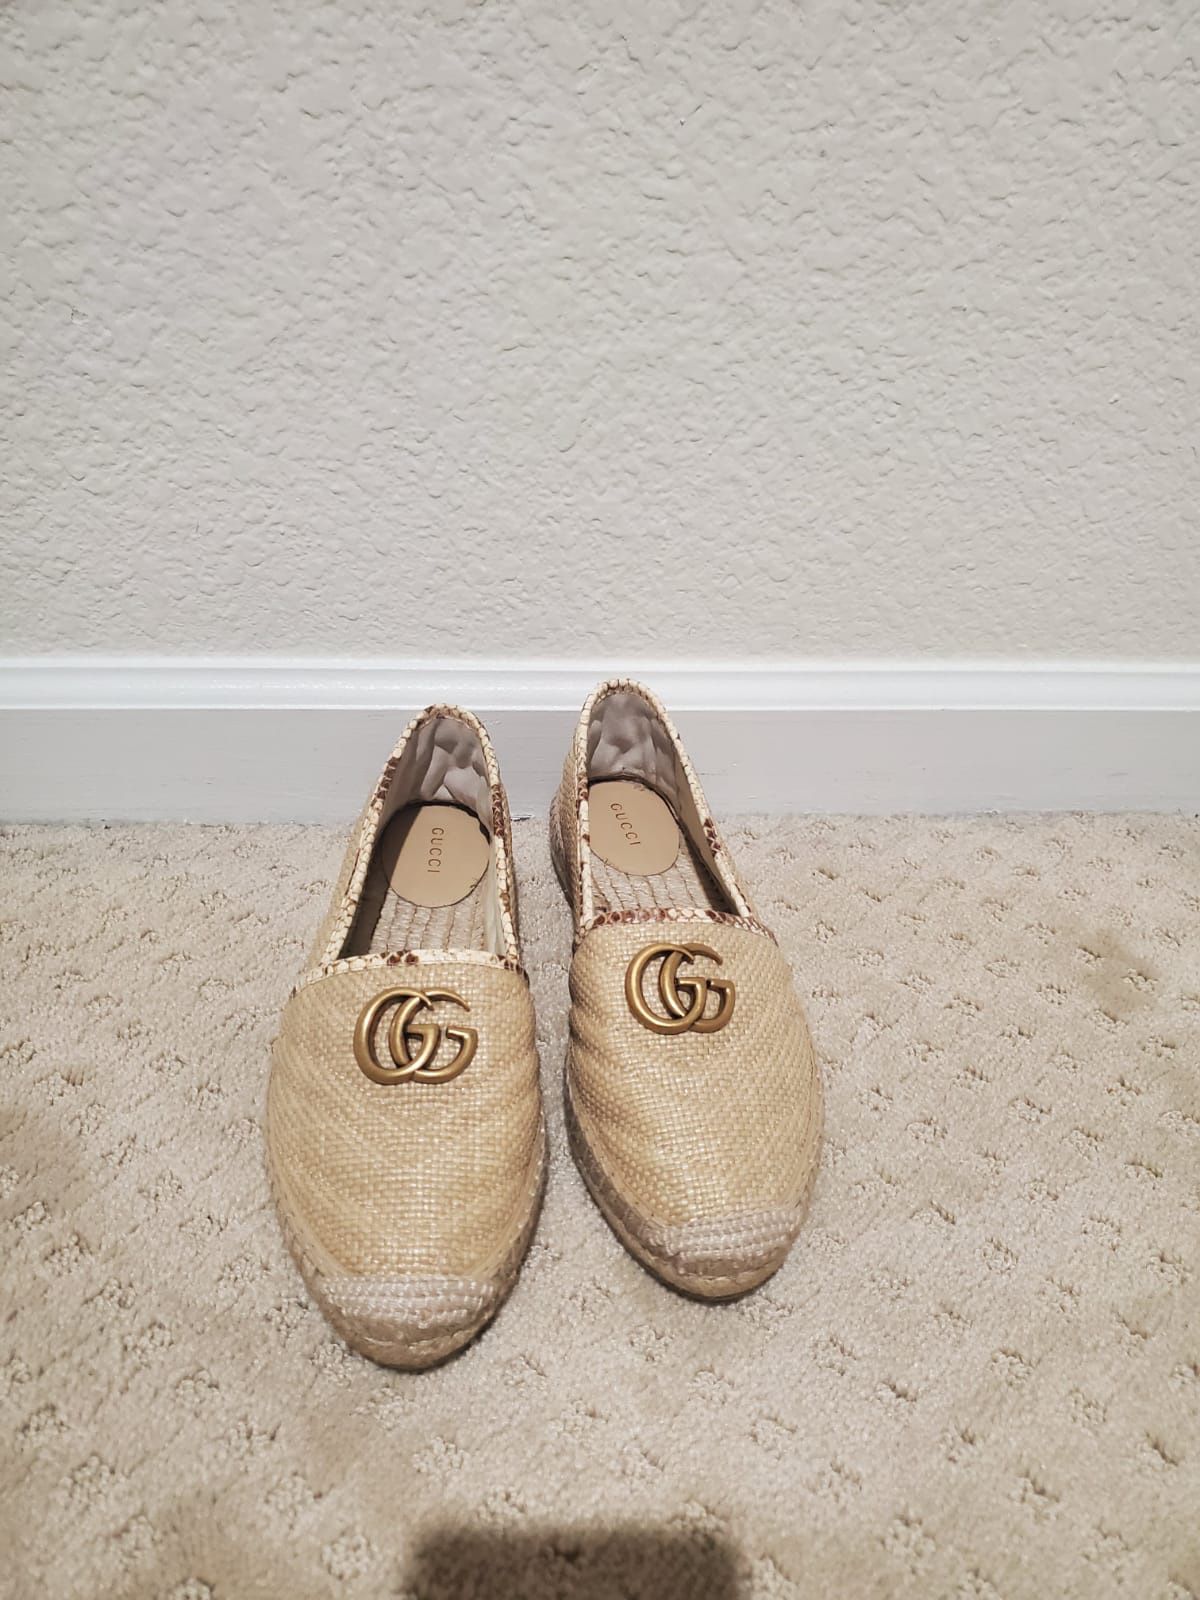 Gucci women’s shoe